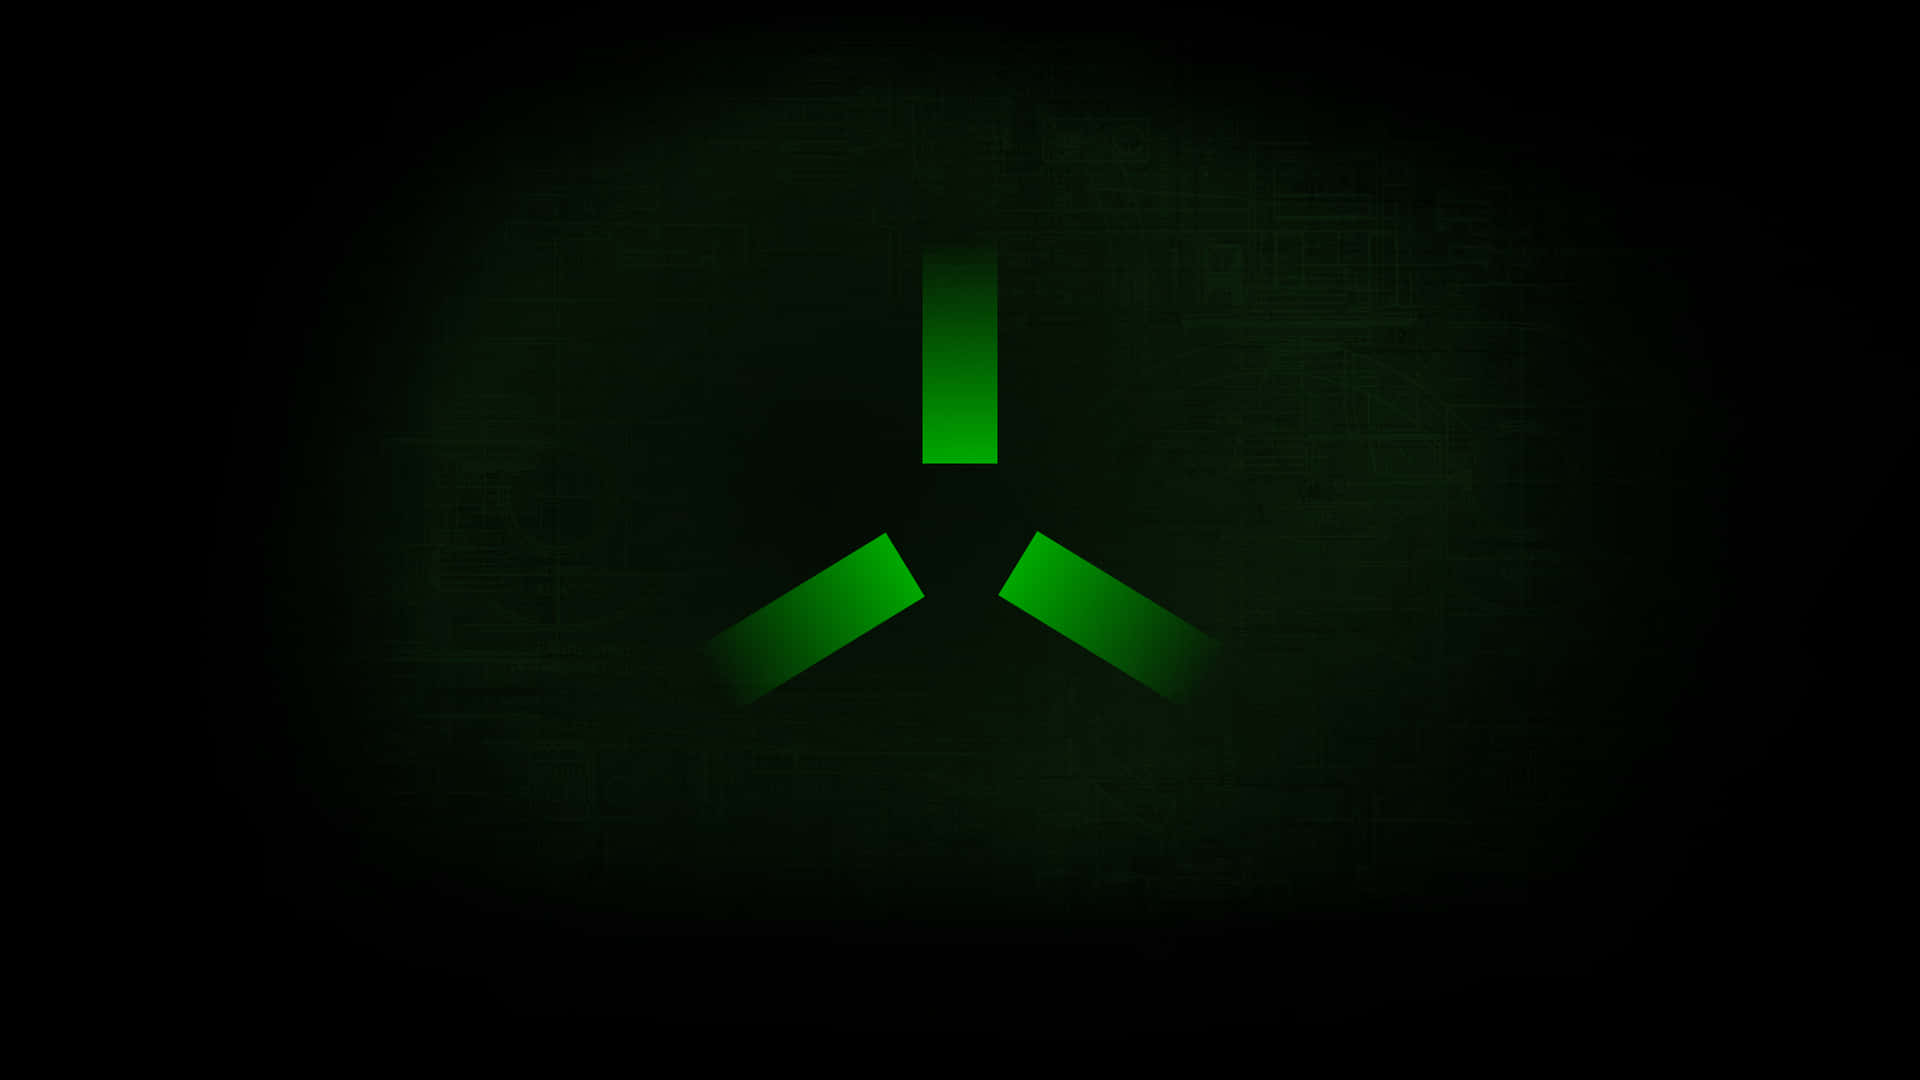 Eingrünes Logo Auf Dunklem Hintergrund Wallpaper